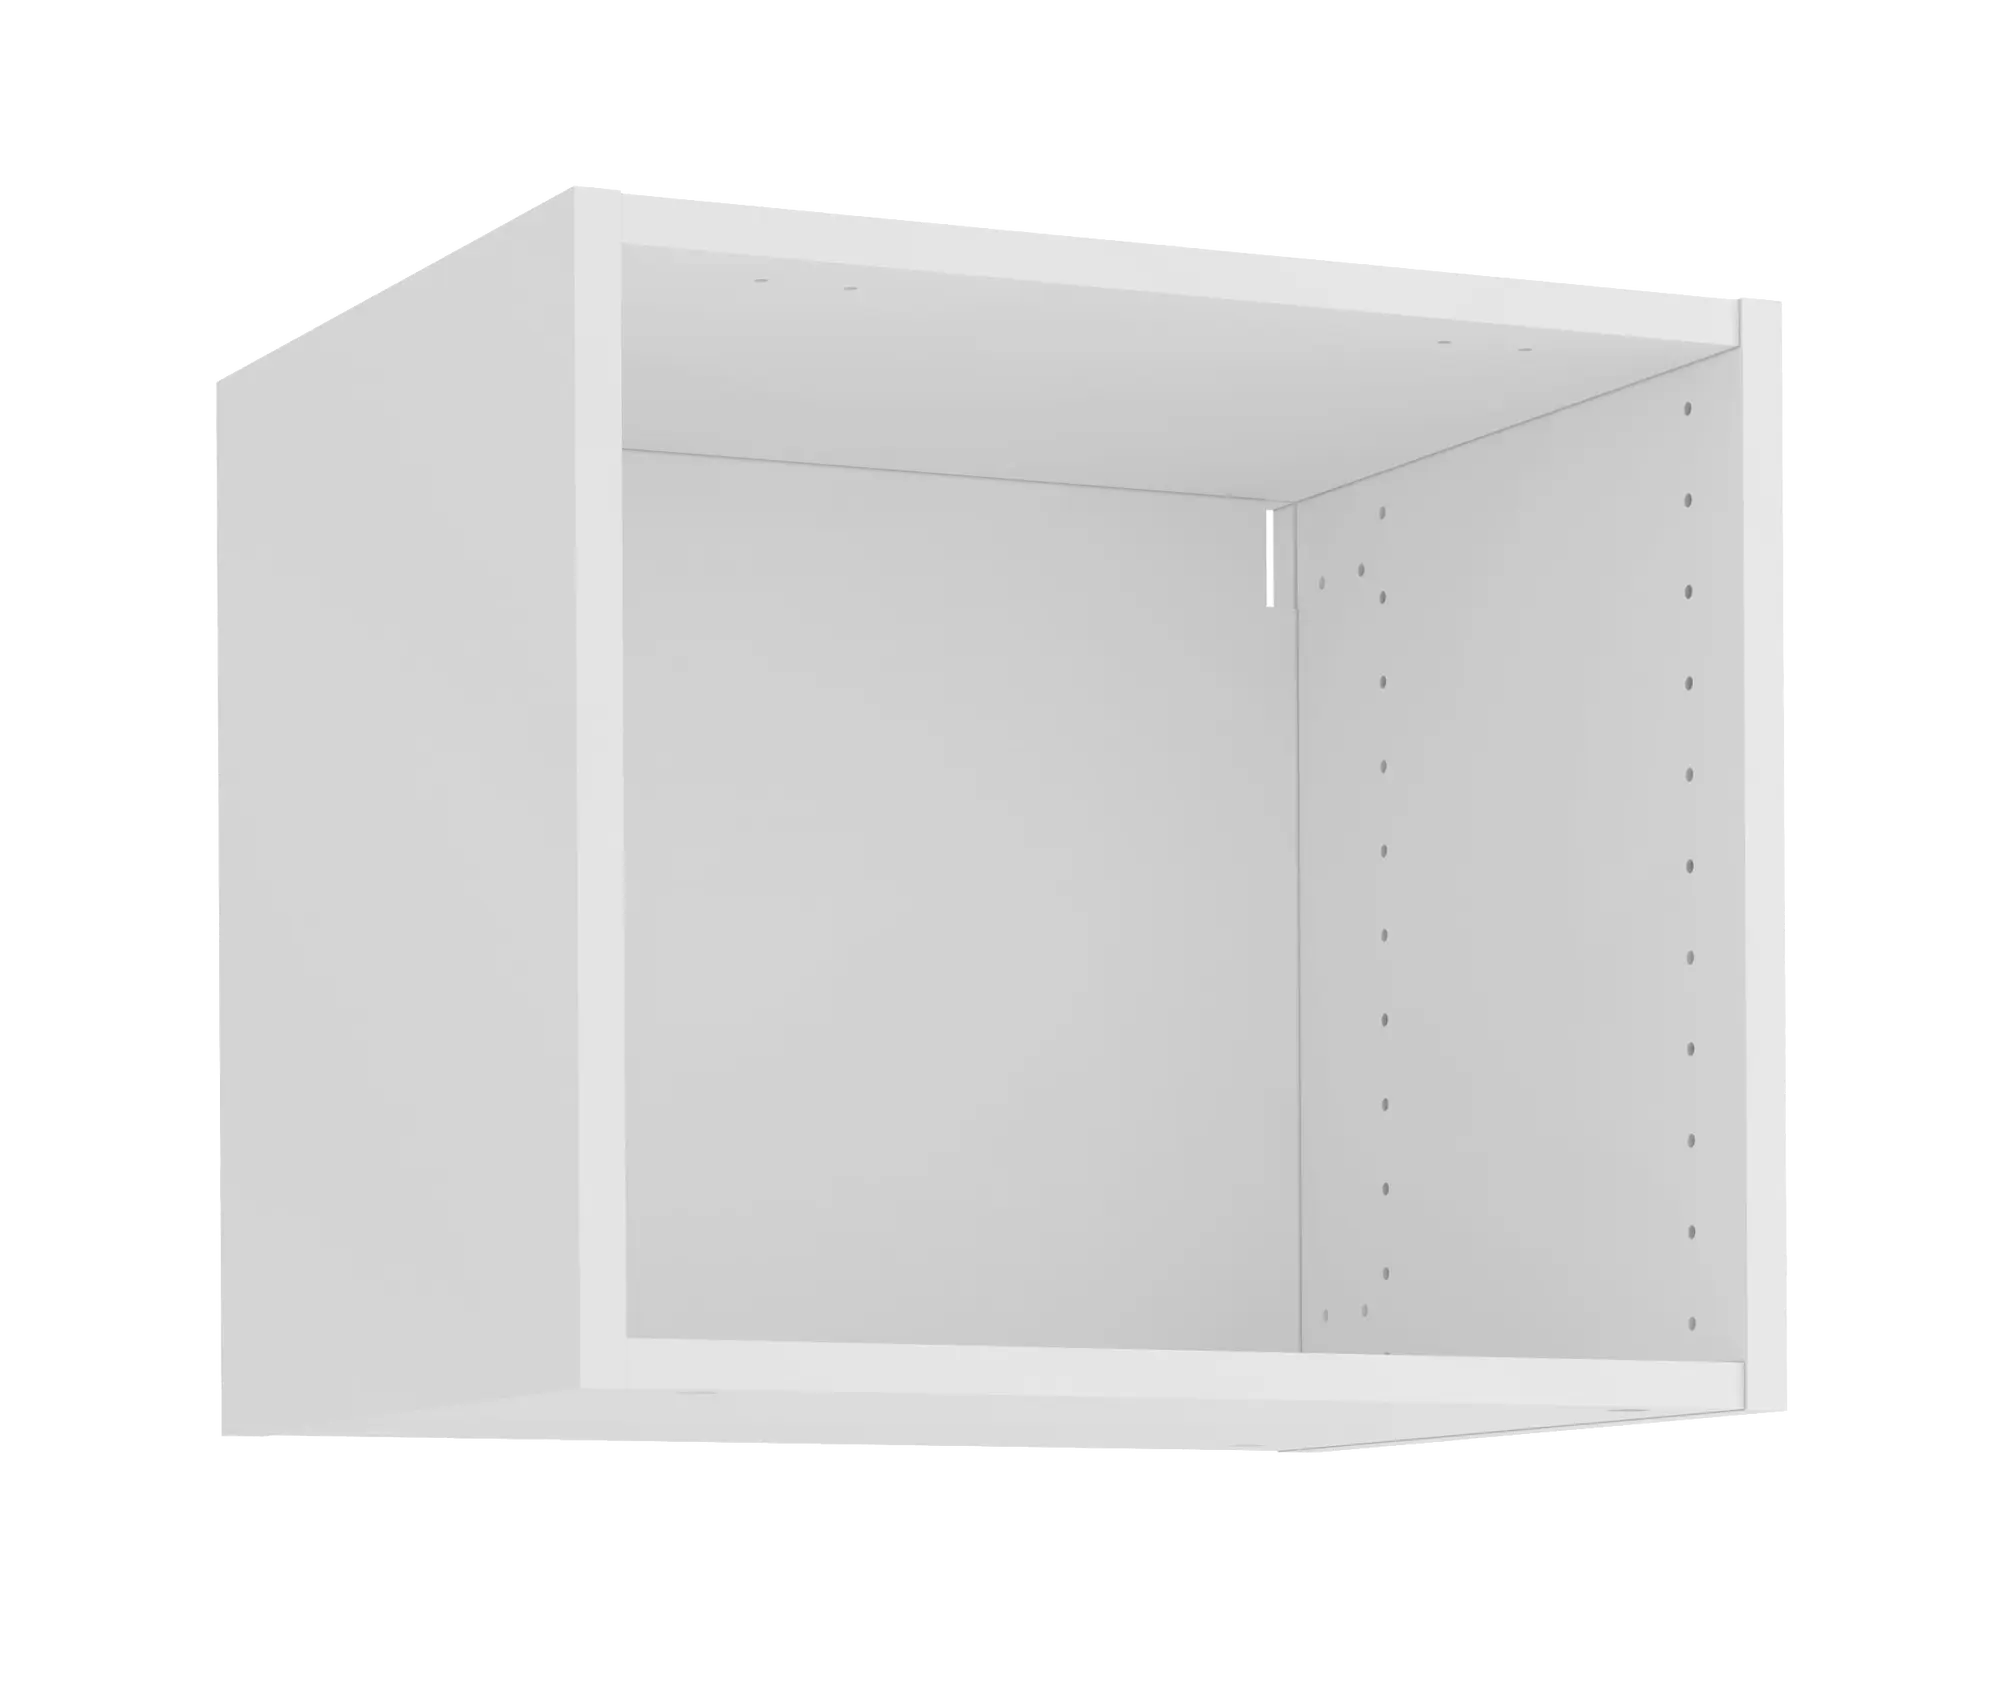 Mueble alto cocina blanco delinia id 45x25,6 cm